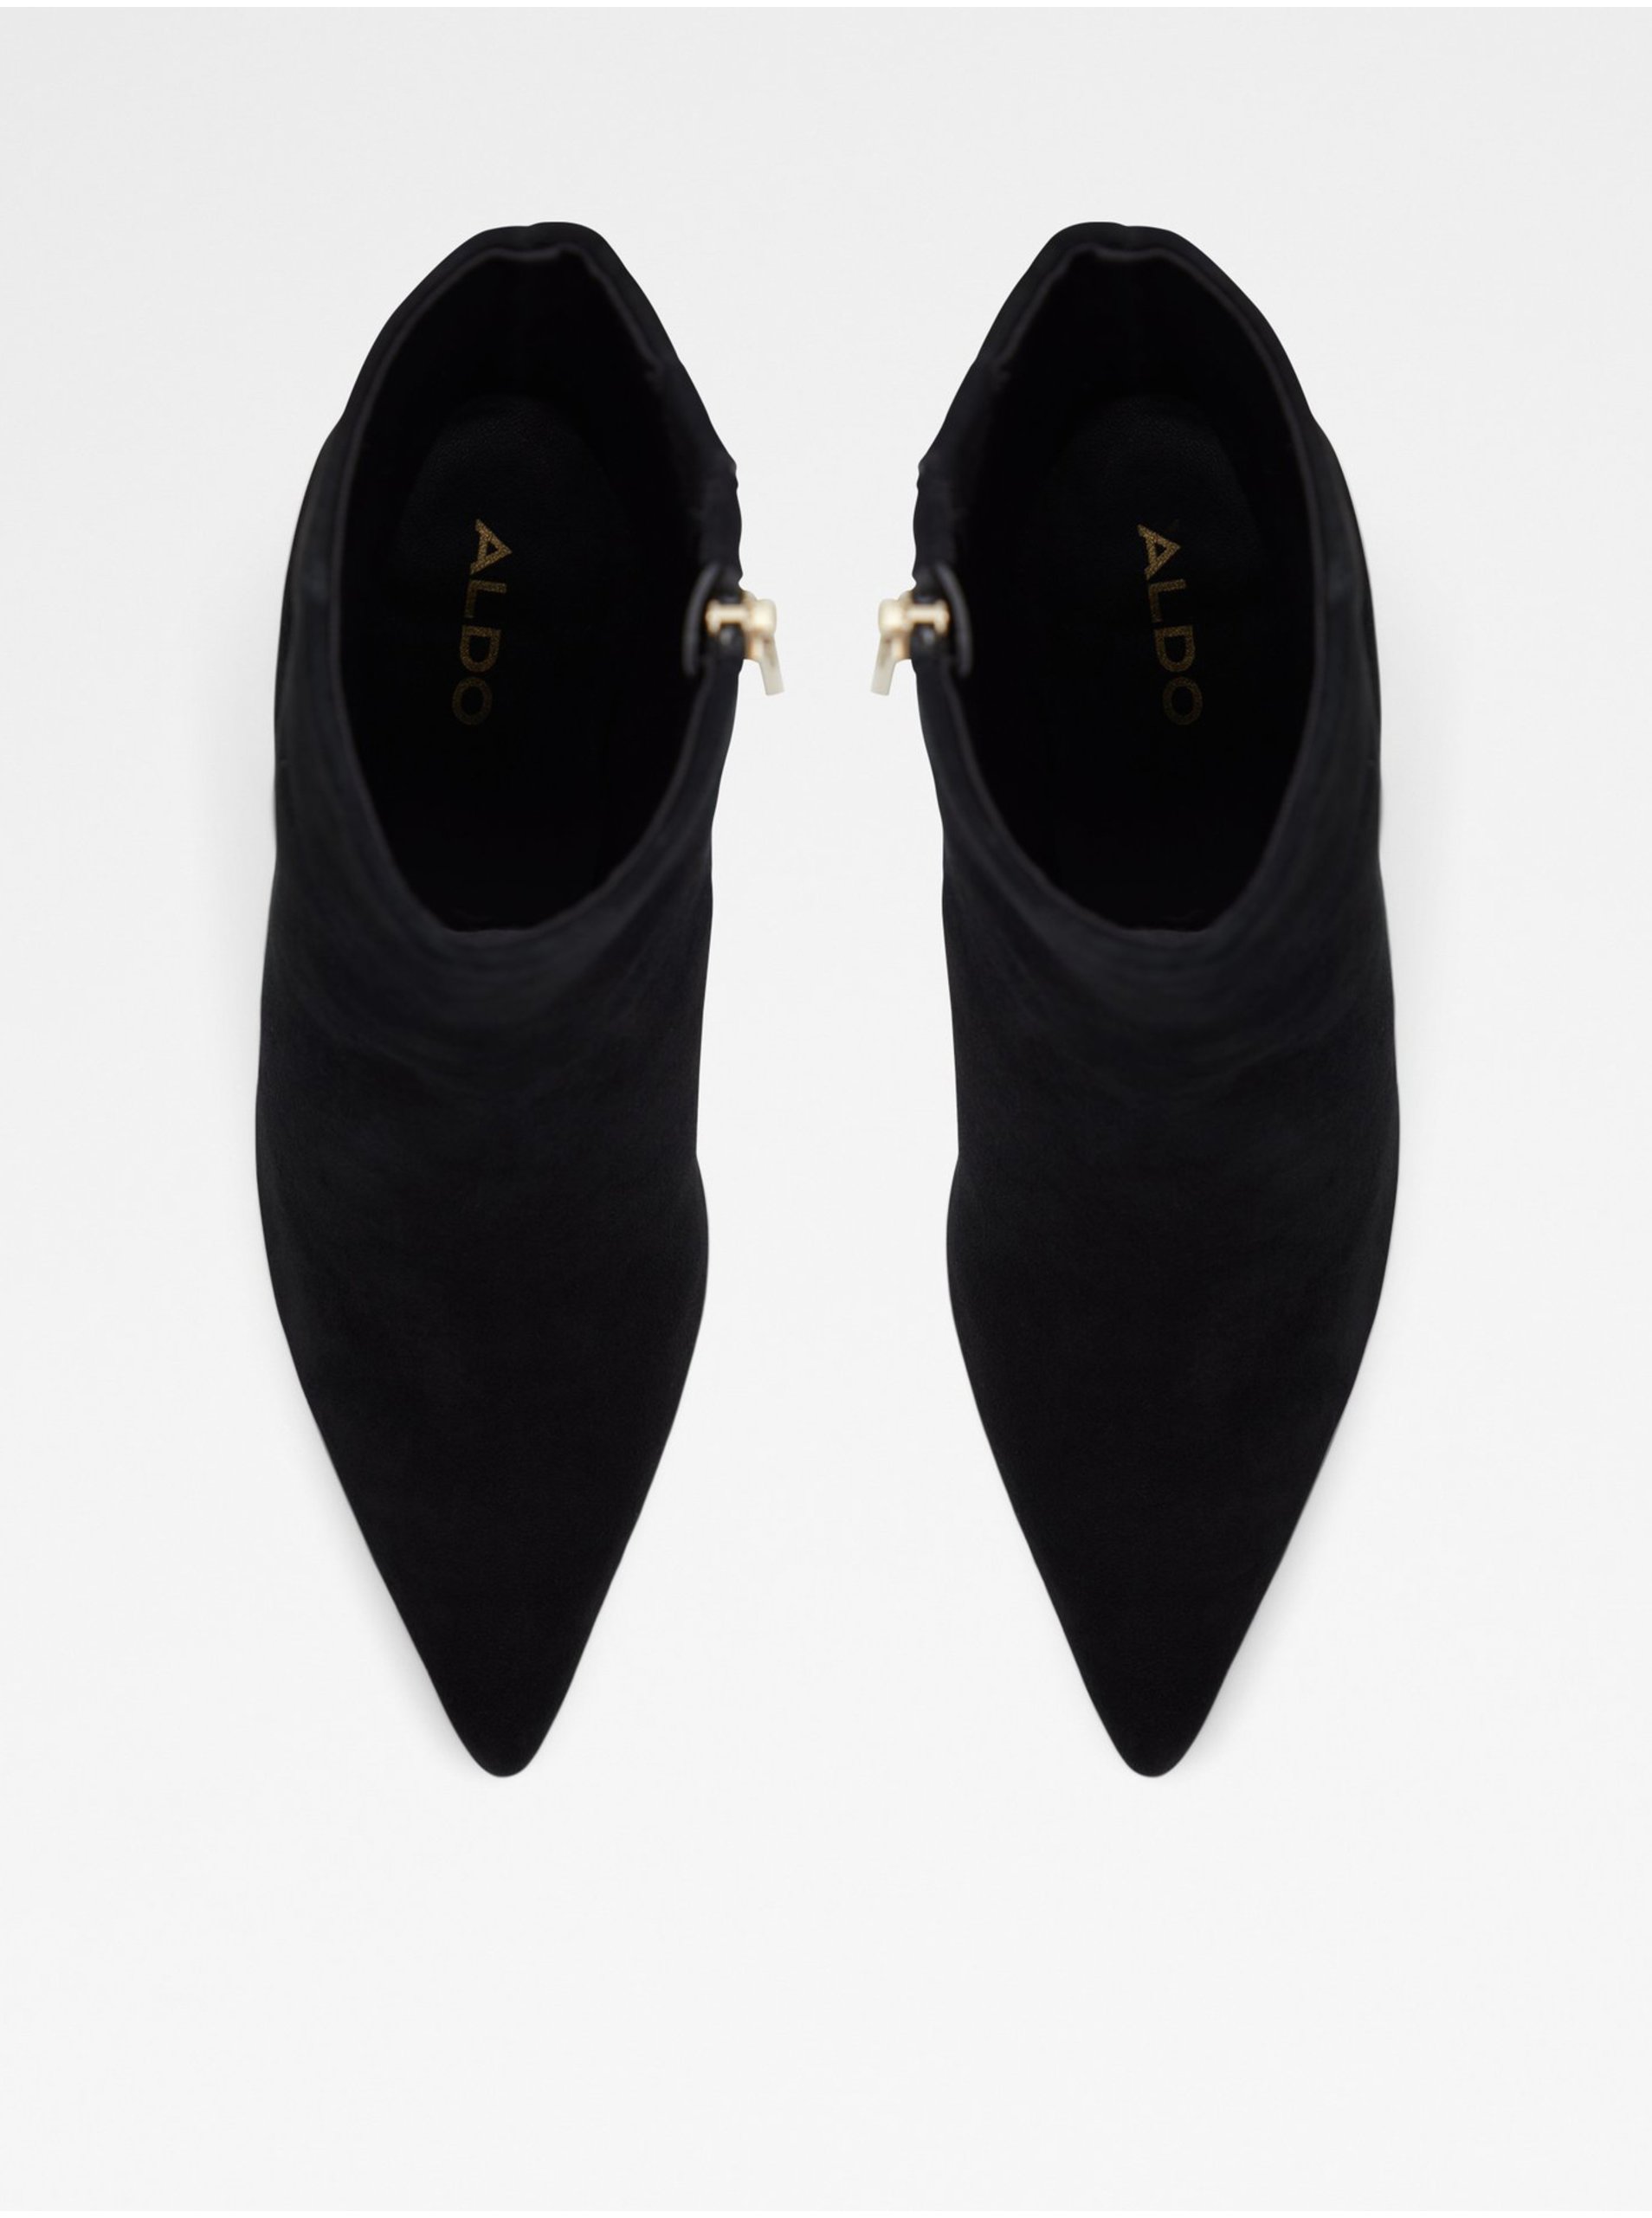 Černé dámské kožené kotníkové boty v semišové úpravě ALDO Haireri